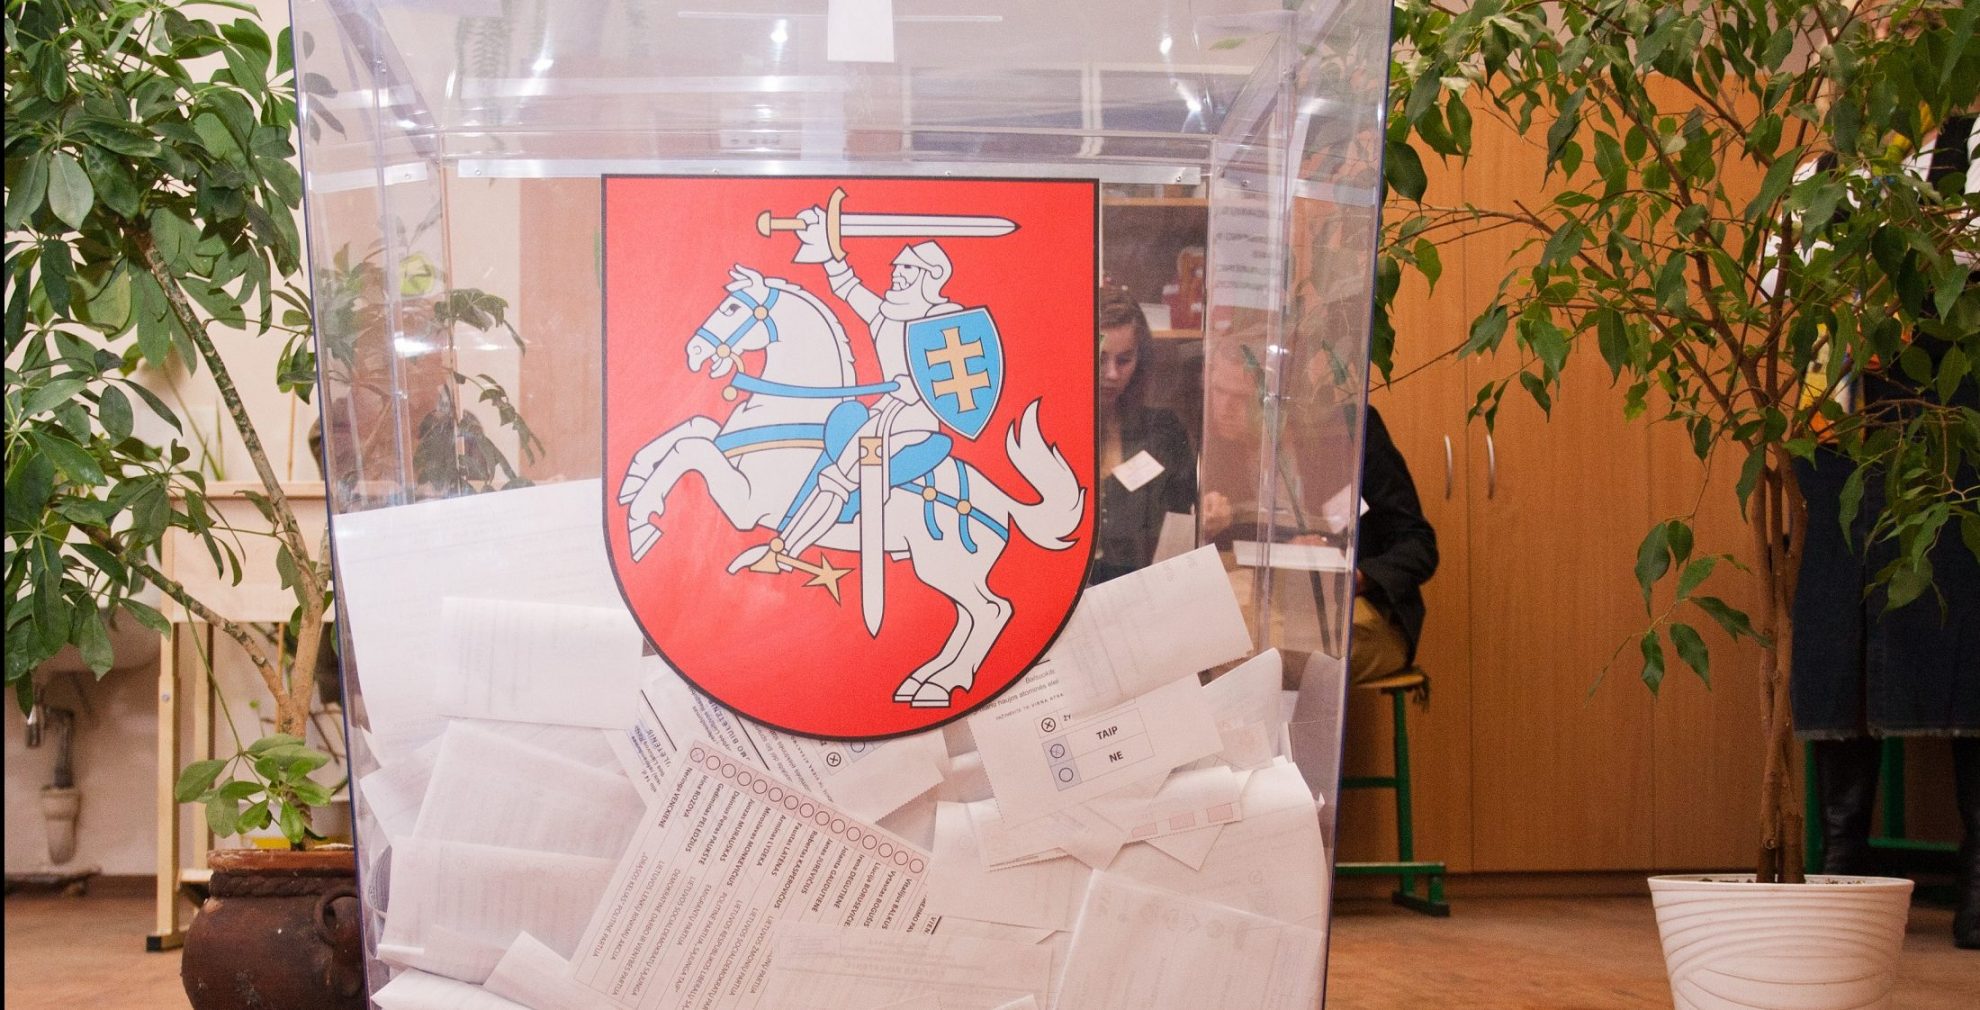 Vyriausiosios rinkimų komisijos (VRK) internetiniame puslapyje oficialiai skelbiama naujų Seimo rinkimų Anykščių-Panevėžio apygardoje data.